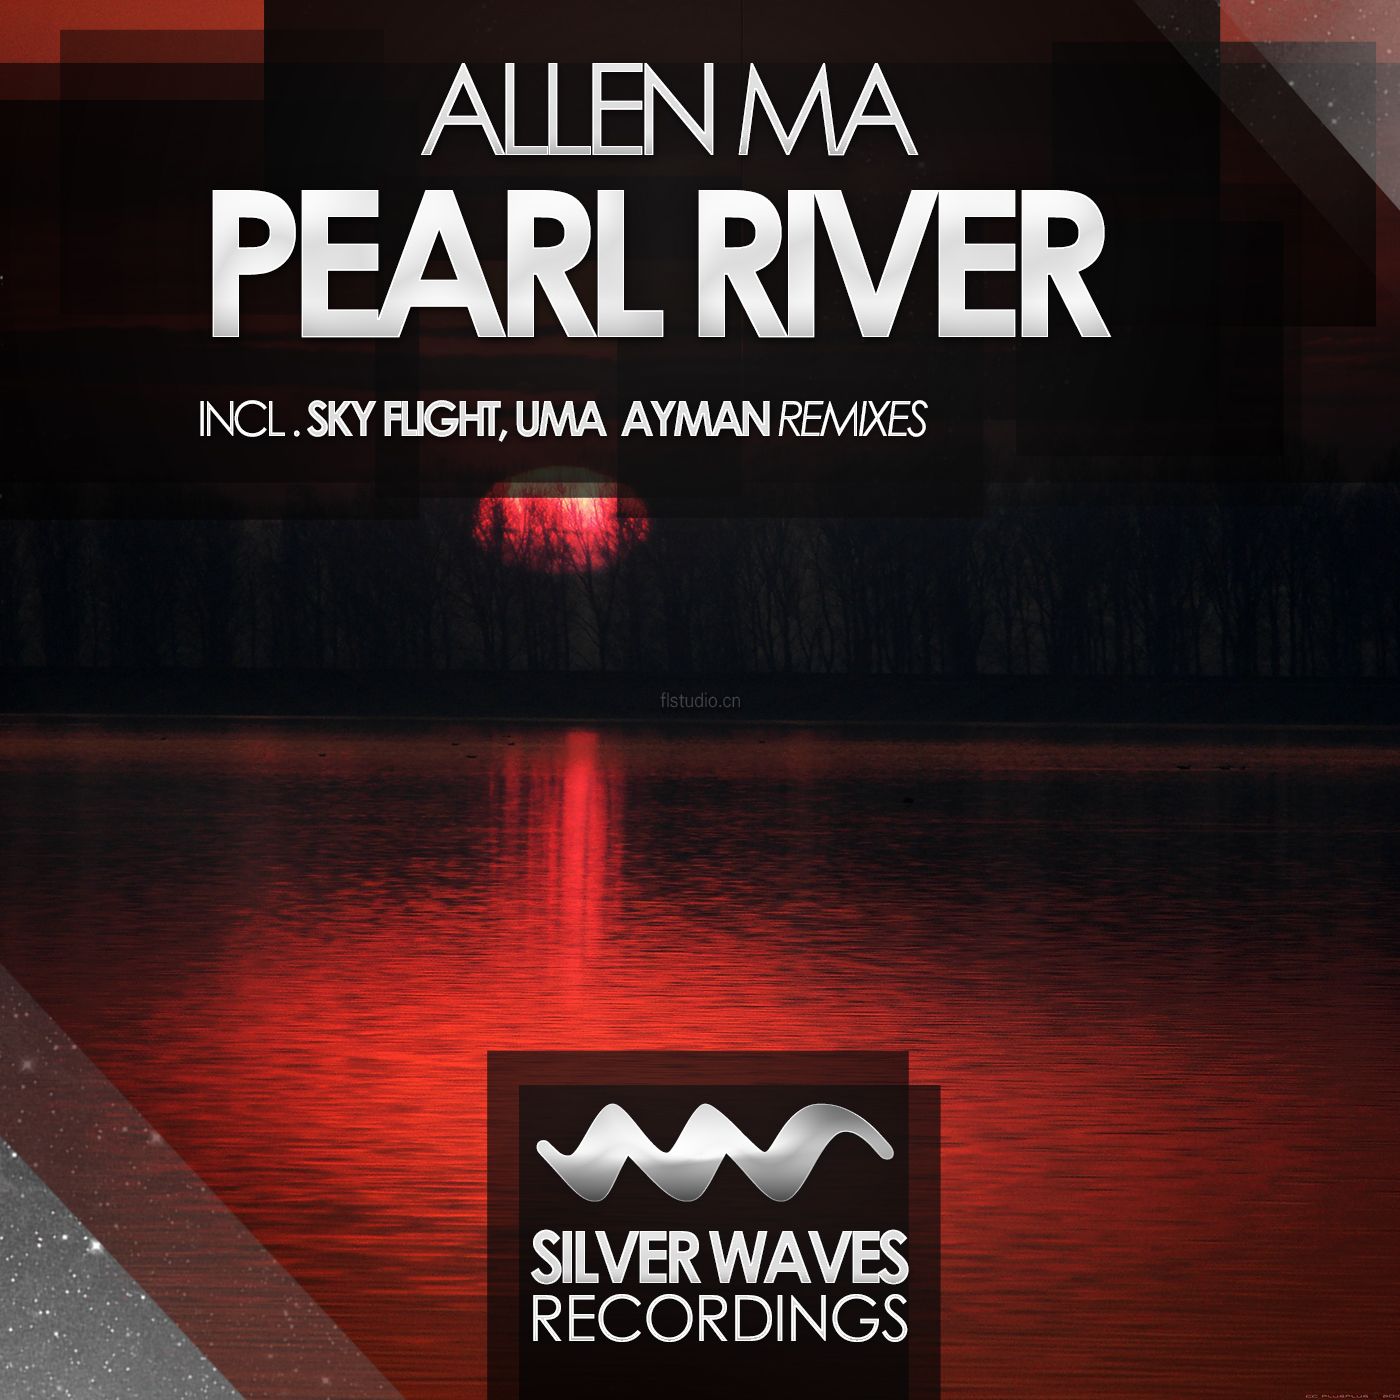 Allen Ma - Pearl River (Incl.Sky Flight,UMA Ayman Remixes).jpg